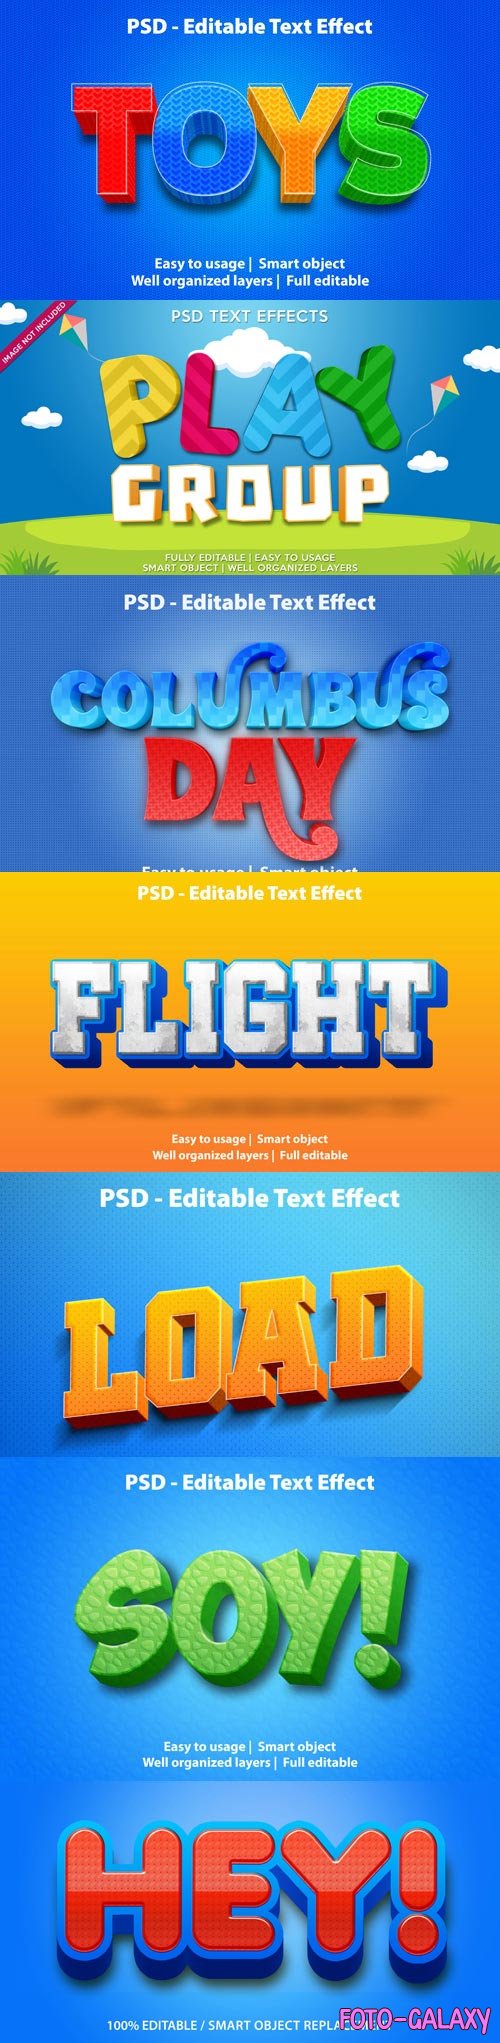 Psd text effect set vol 30